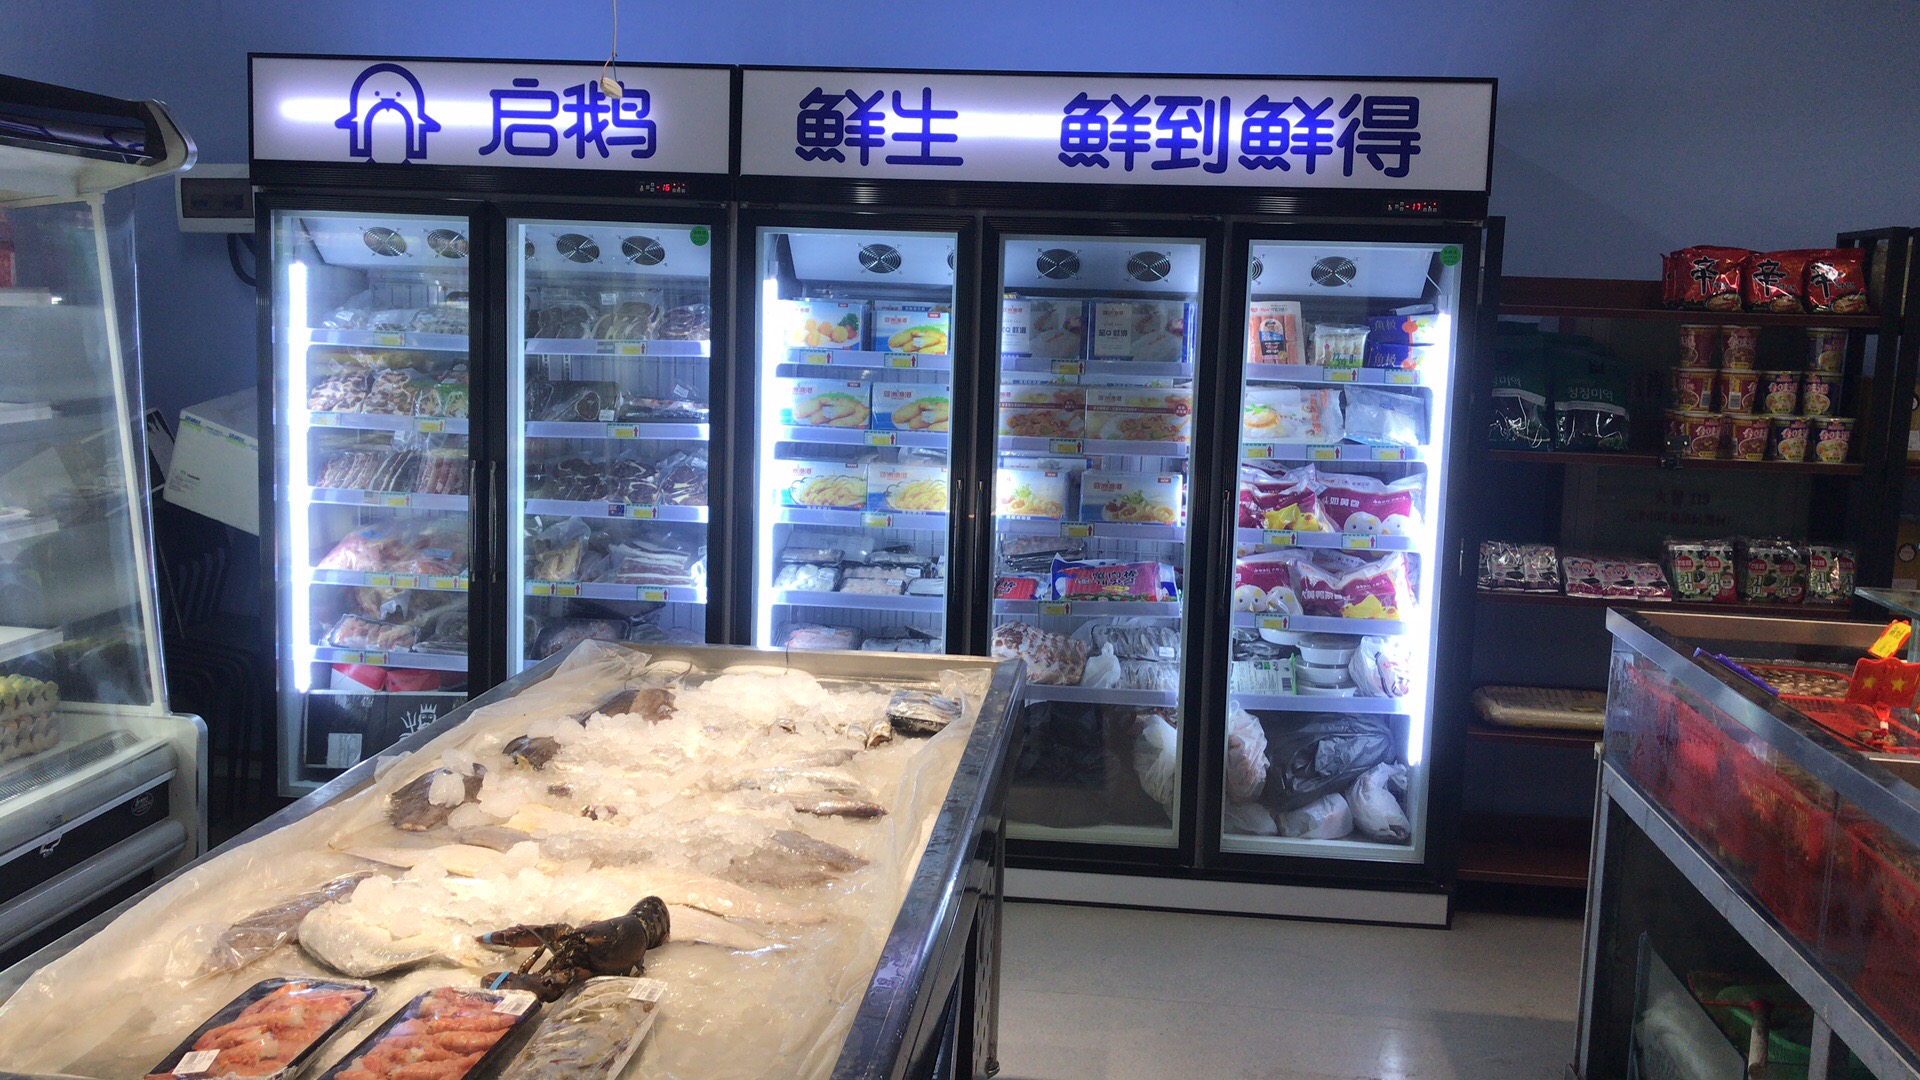 天津-启鹅鲜生-玻璃门柜 - 大型超市冷柜工程案例 - 【易同人冷柜】专业冷冻柜_冰柜_保鲜柜_冷藏展示柜_冰柜生产厂家。